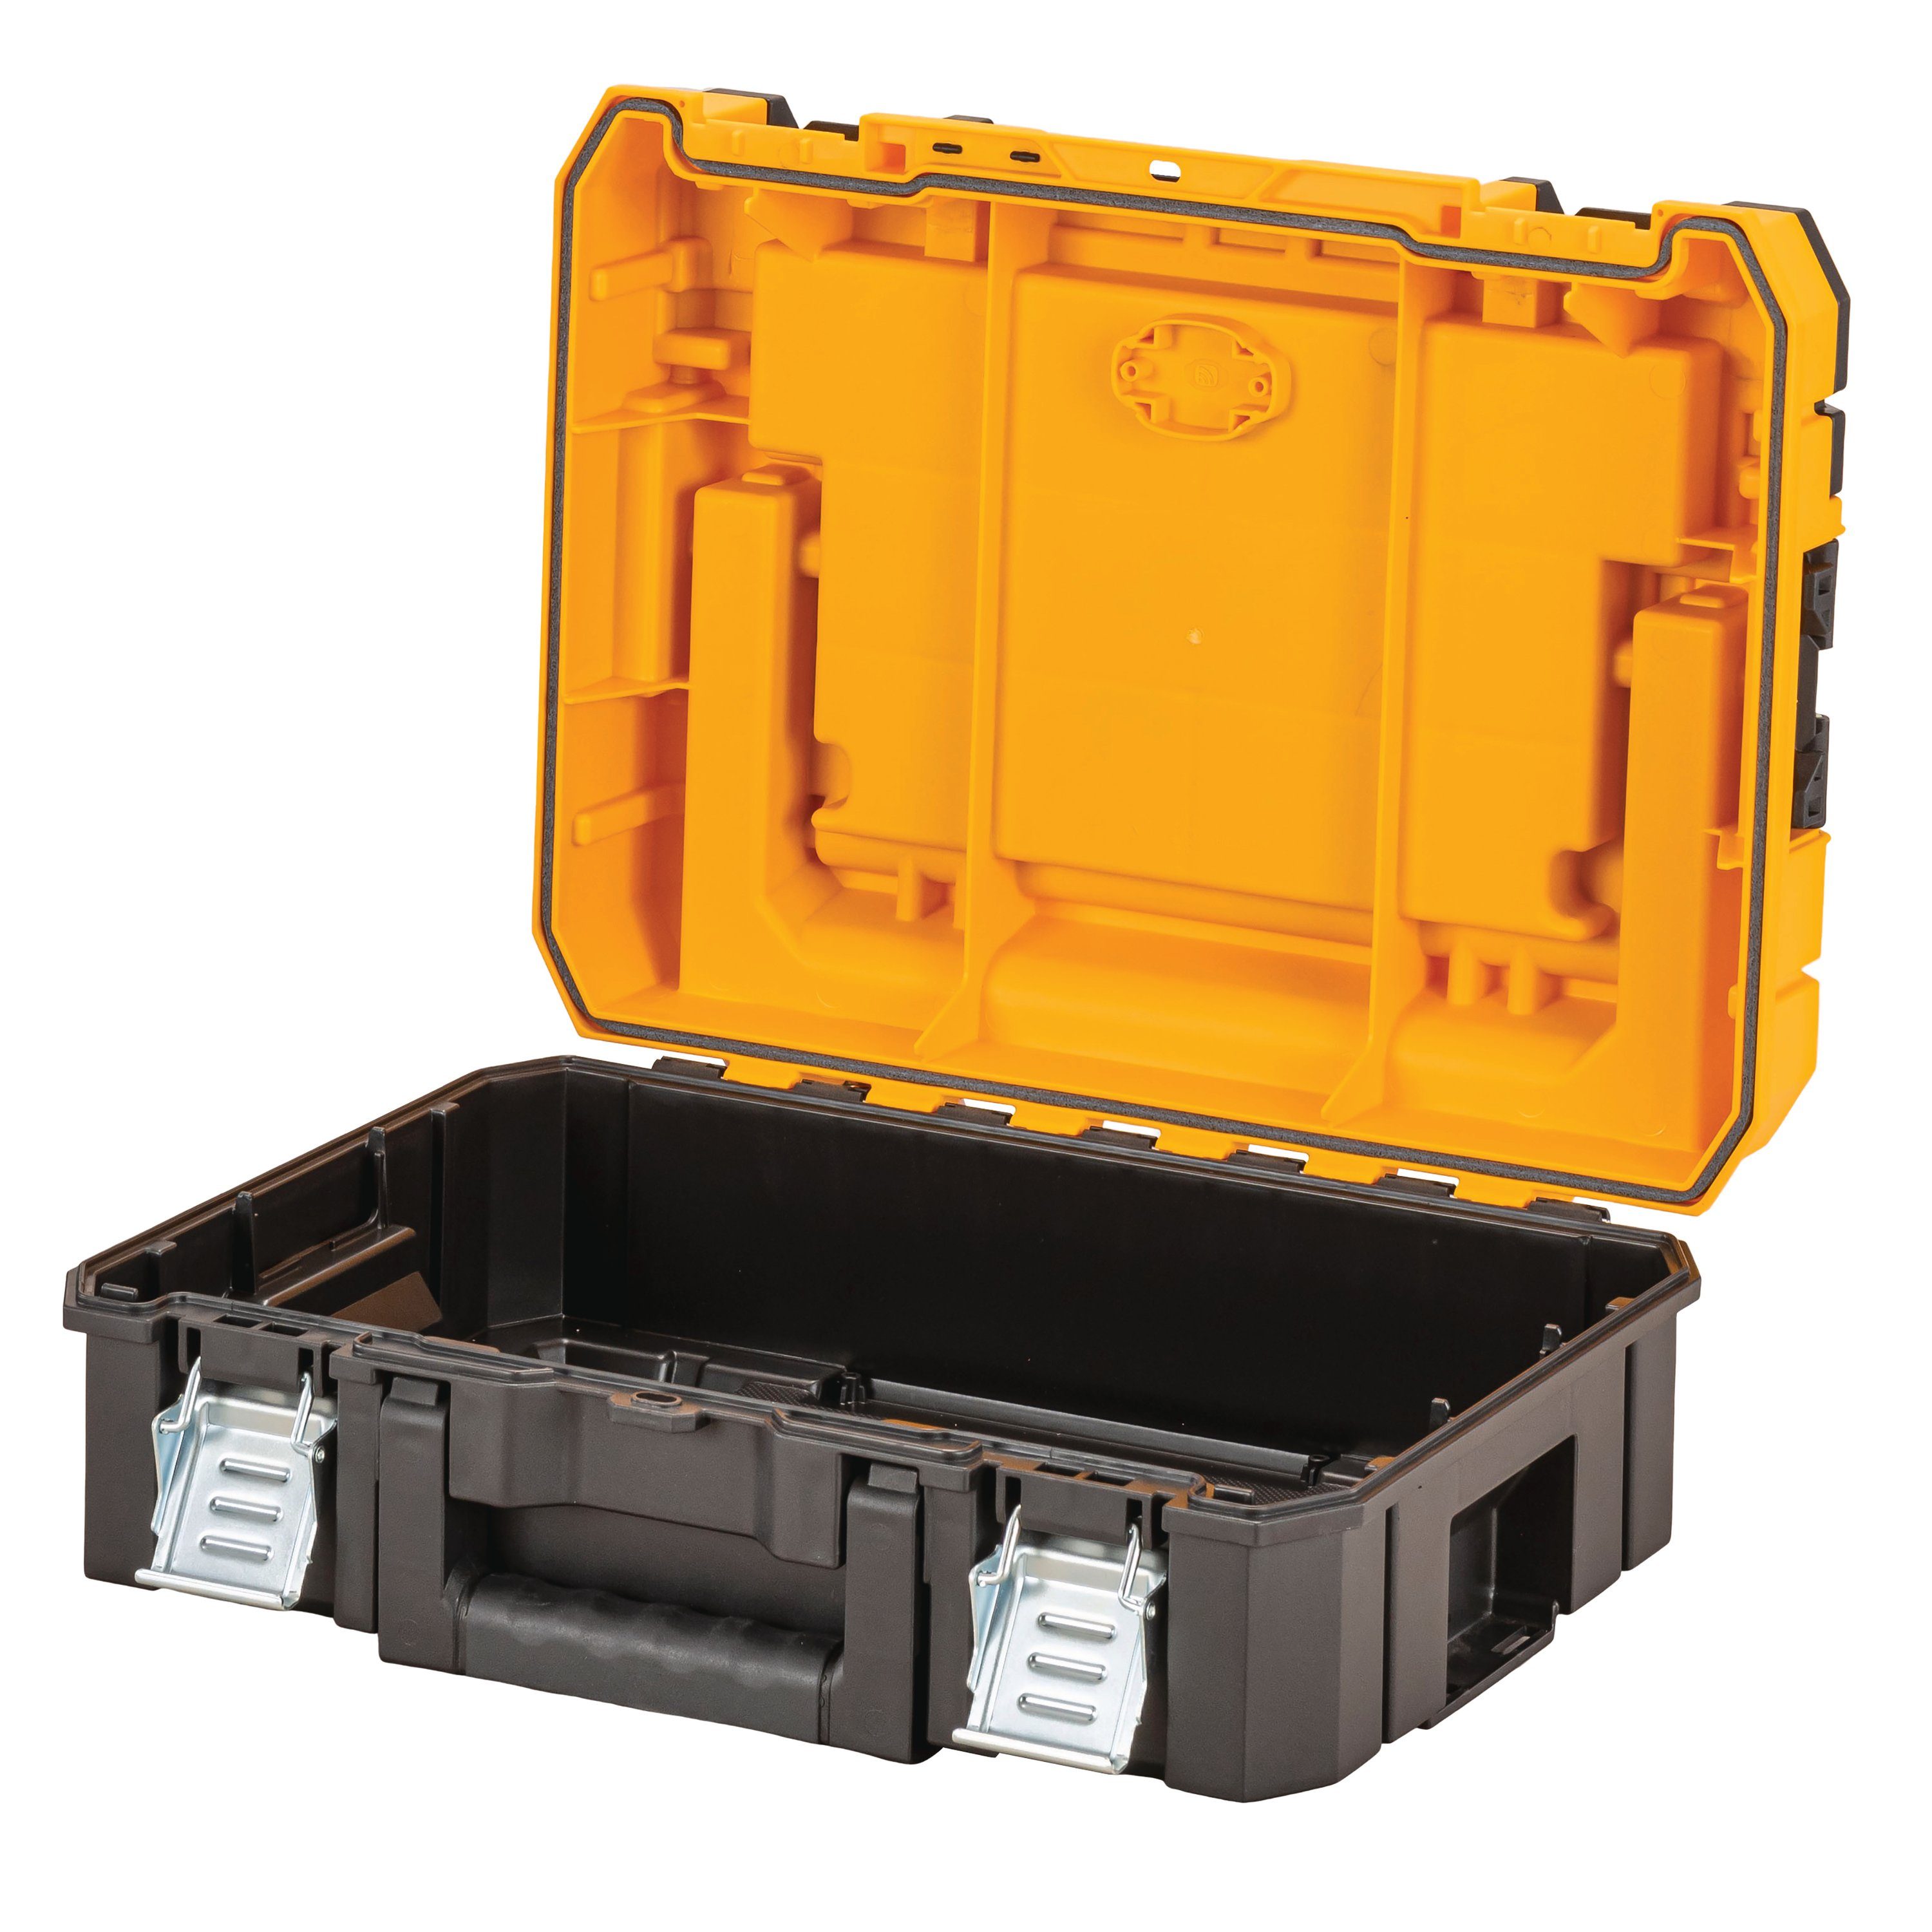 Schutz für Schwarz/Gelb, Werkzeugkoffer TSTAK I Werkzeugbox Werkzeugkoffer DeWalt IP54 DWST83344-1 Schaumstoffeinlage Systemboxen, TSTAK Basiselement